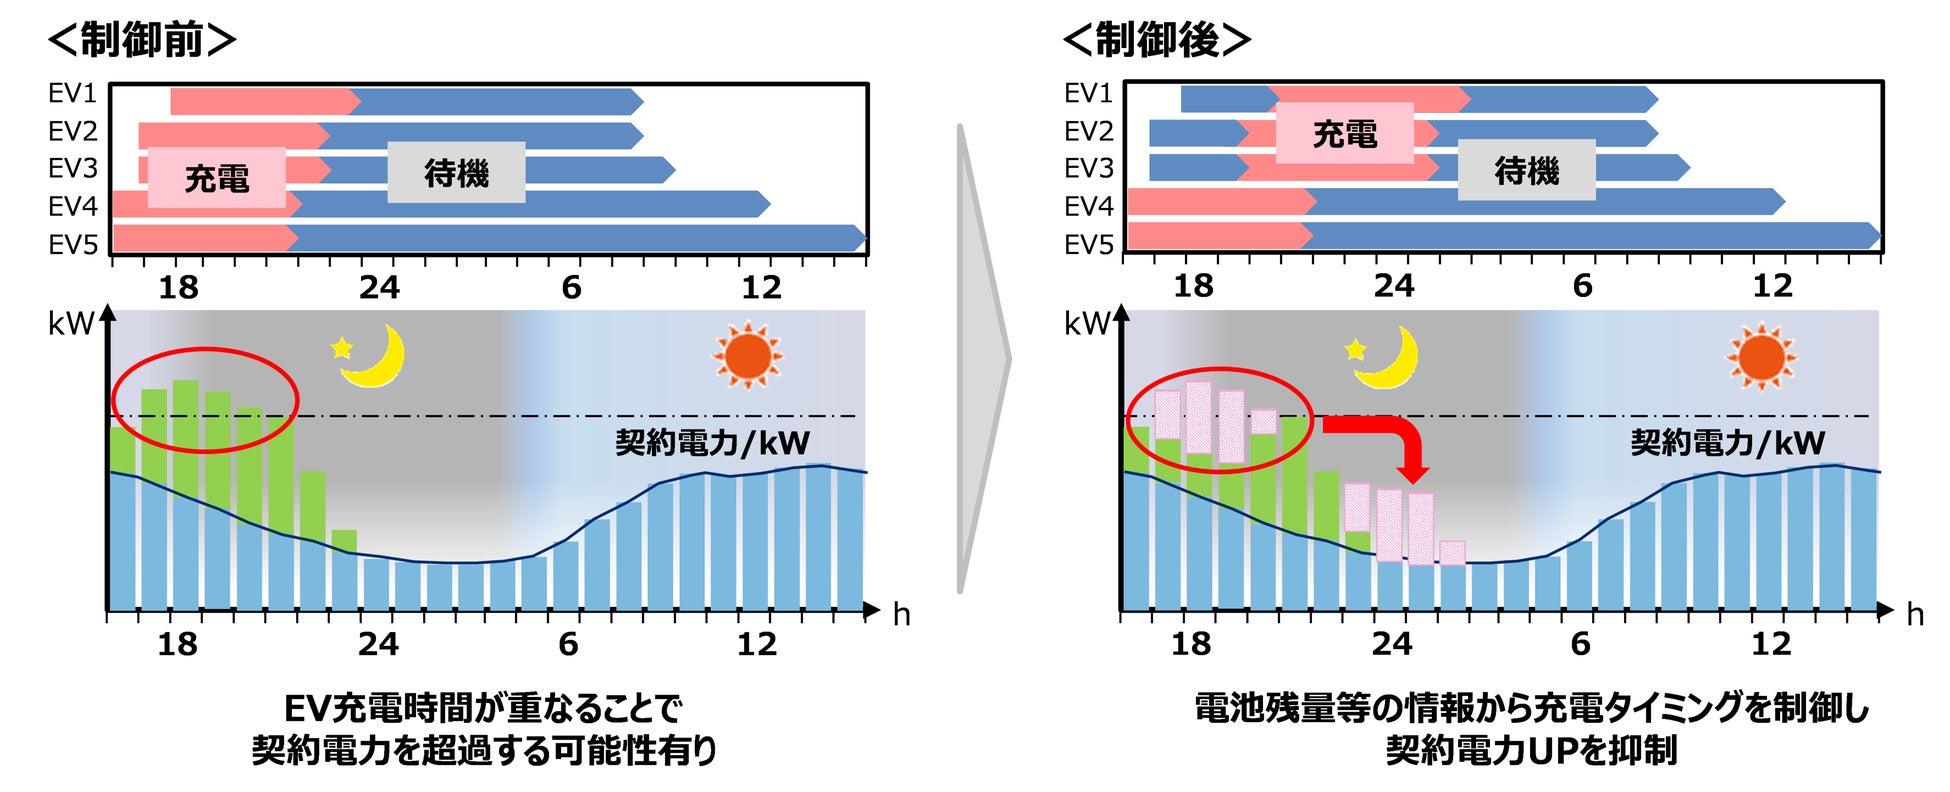 EV導入およびEV充電マネジメントの共同検証に関する基本合意書を狭山市・武州ガス・日本カーソリューションズ・東京ガスの4者で締結のサブ画像2